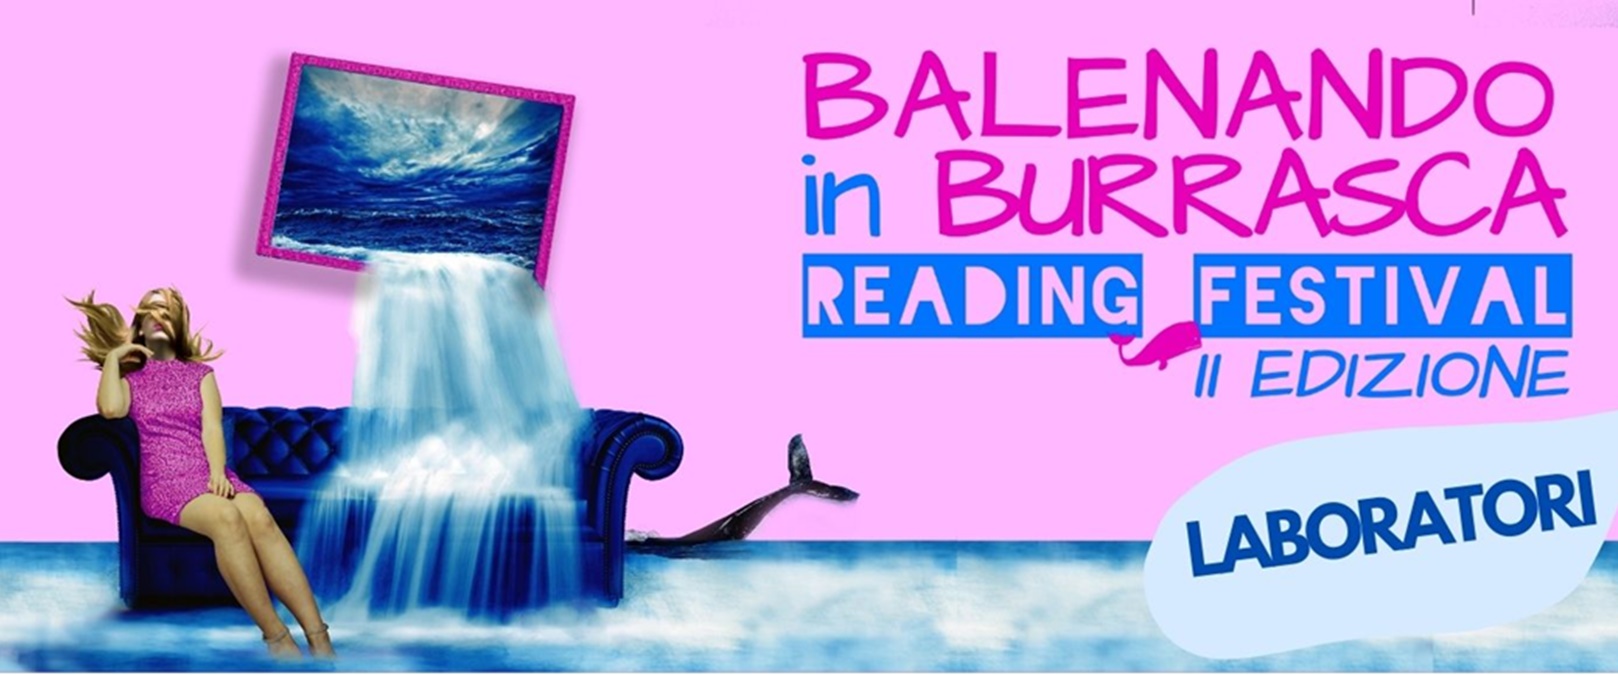 Reggio, al via la seconda edizione del “Balenando in Burrasca Reading Festival”